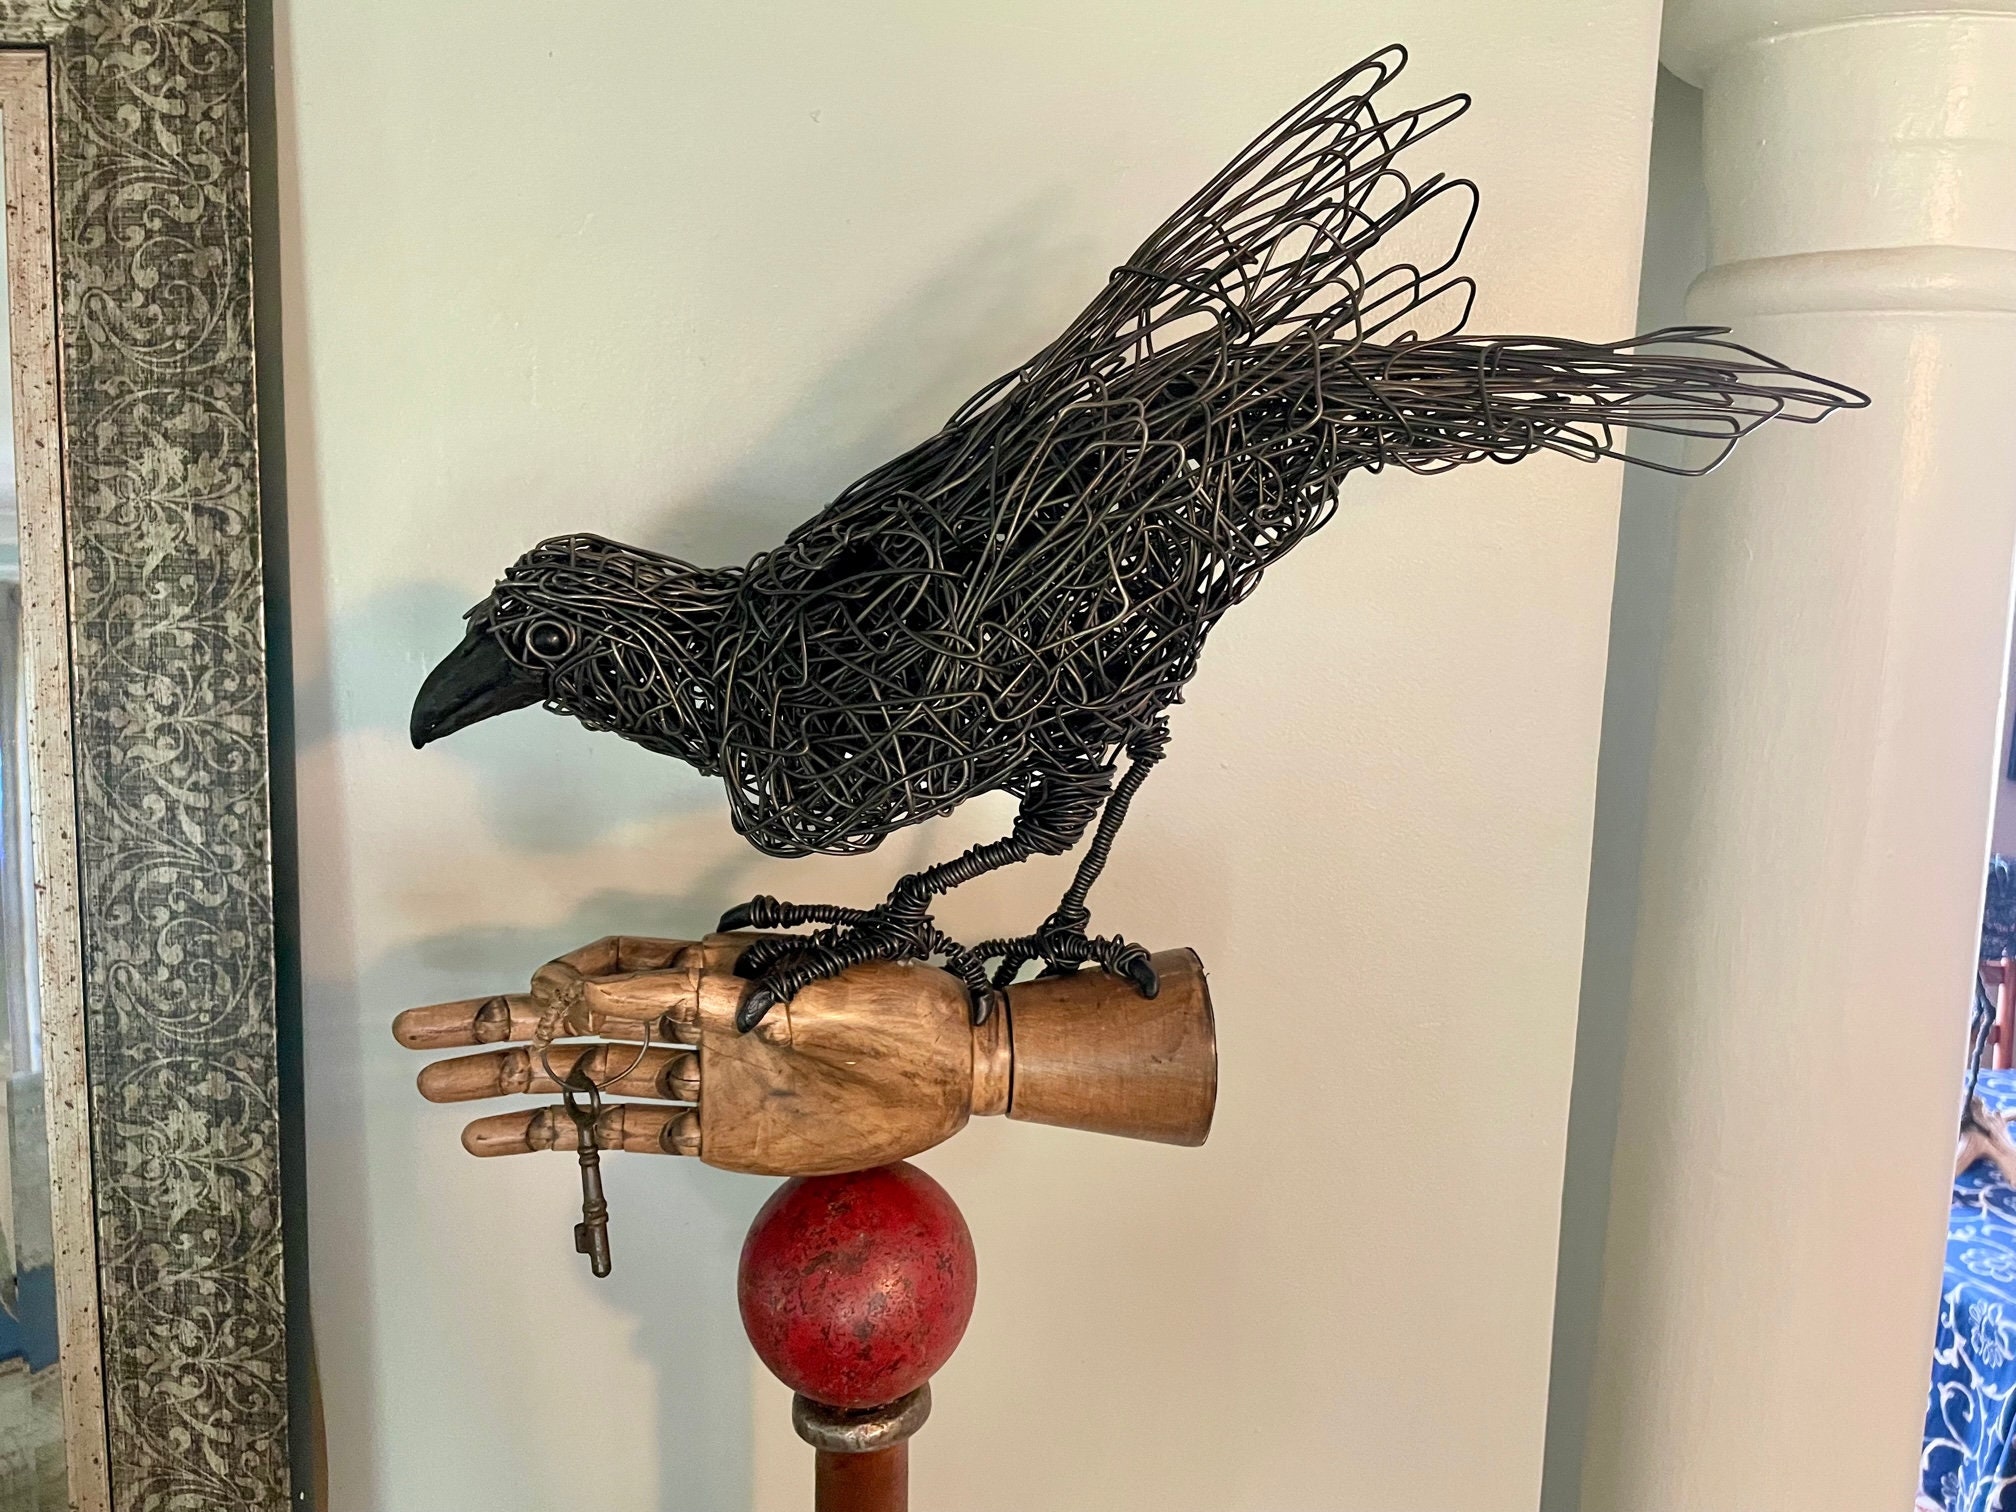 Original Handmade Crow Wire Sculpture, Wire Art, Wire Sculpture